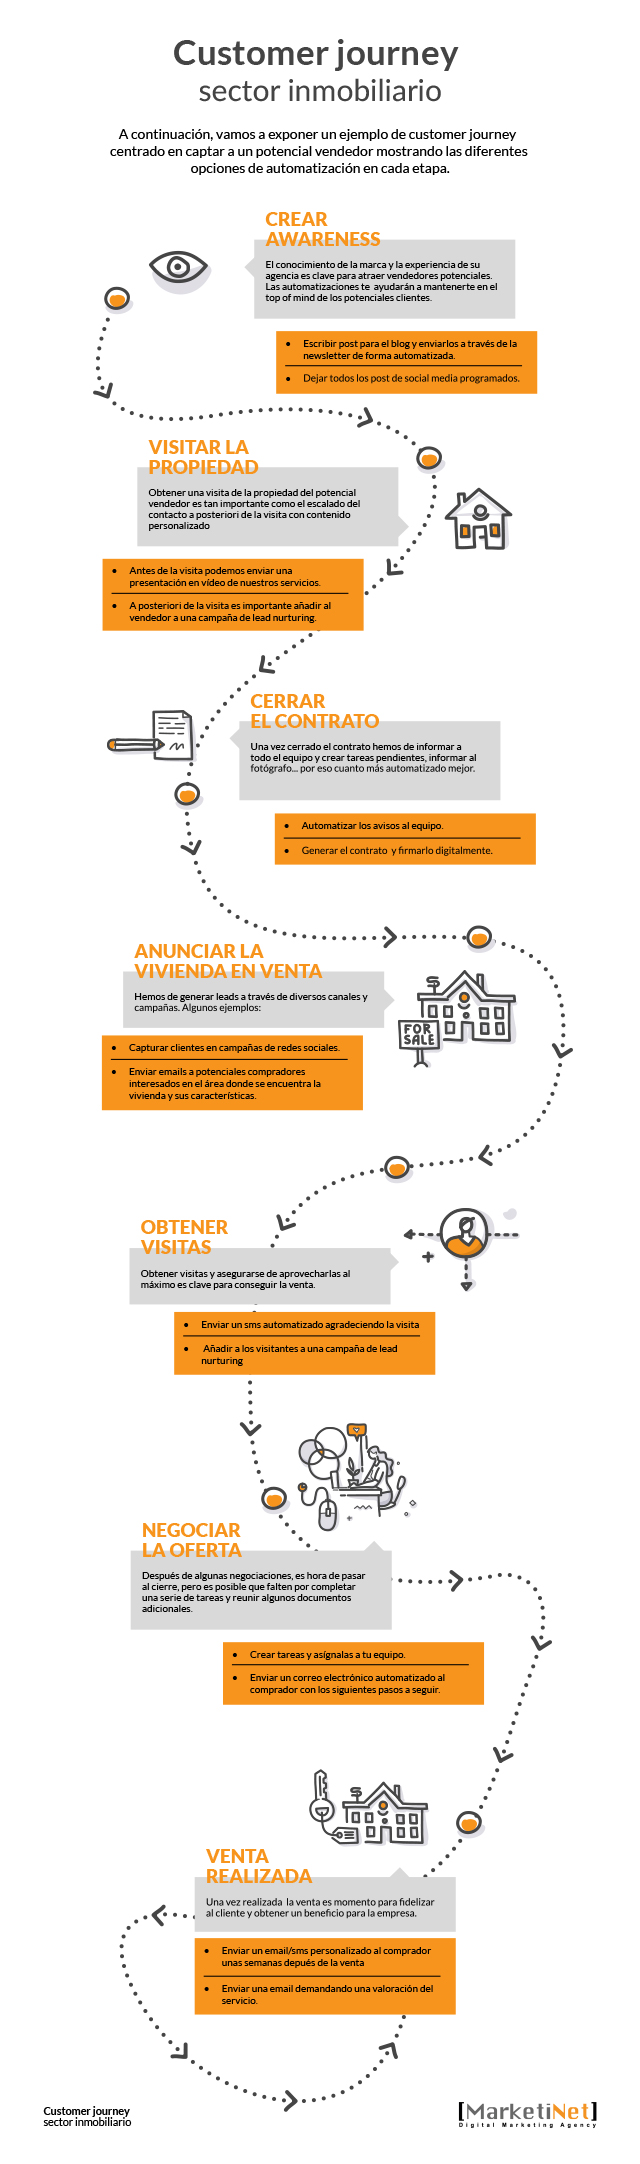 Infografía del Customer journey en el sector inmobiliario